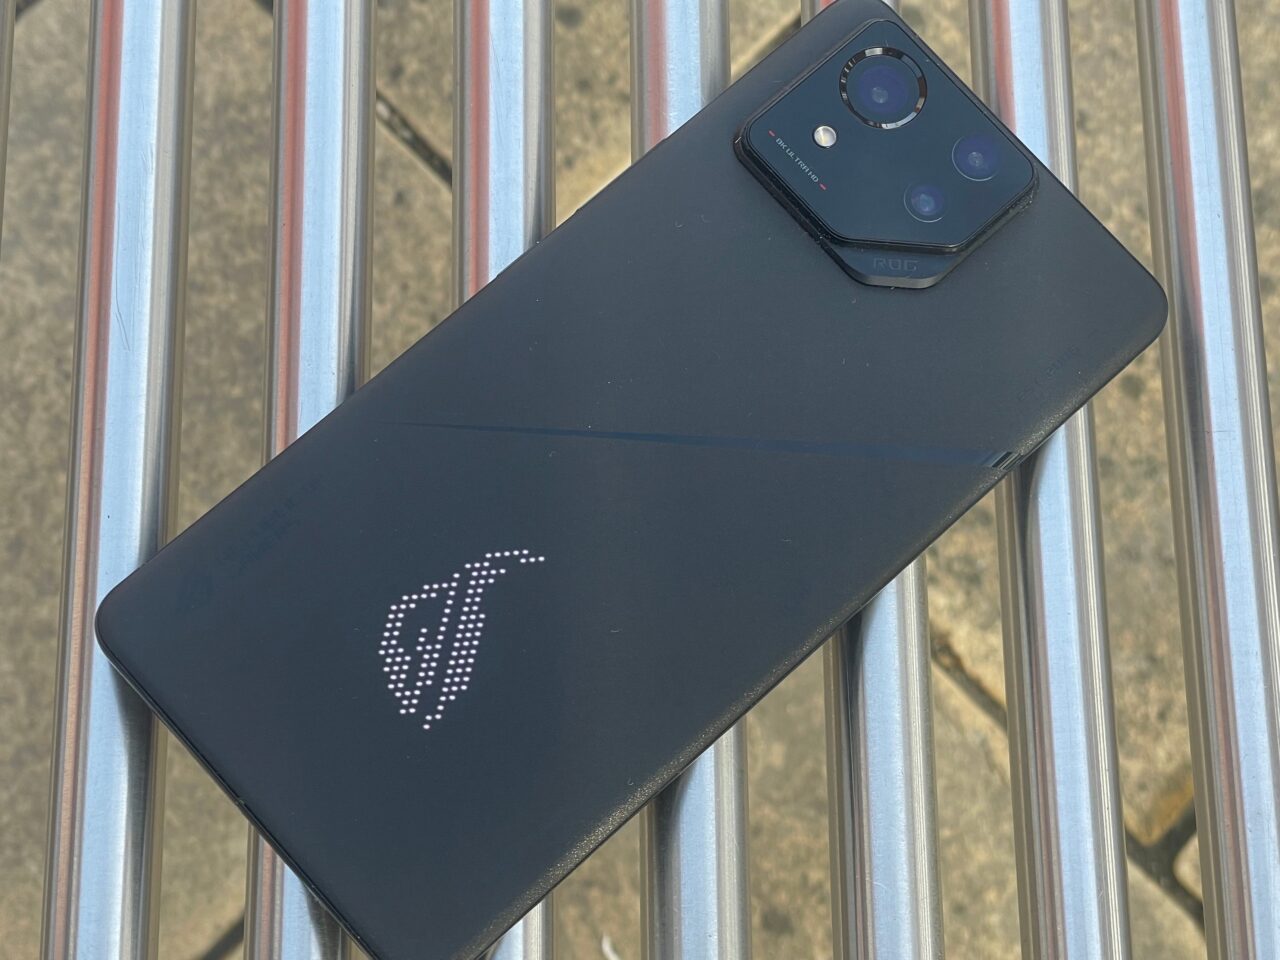 Czarny smartfon z logo w formie podświetlanego białego logotypu na tylnym panelu, położony na metalowych prętach.